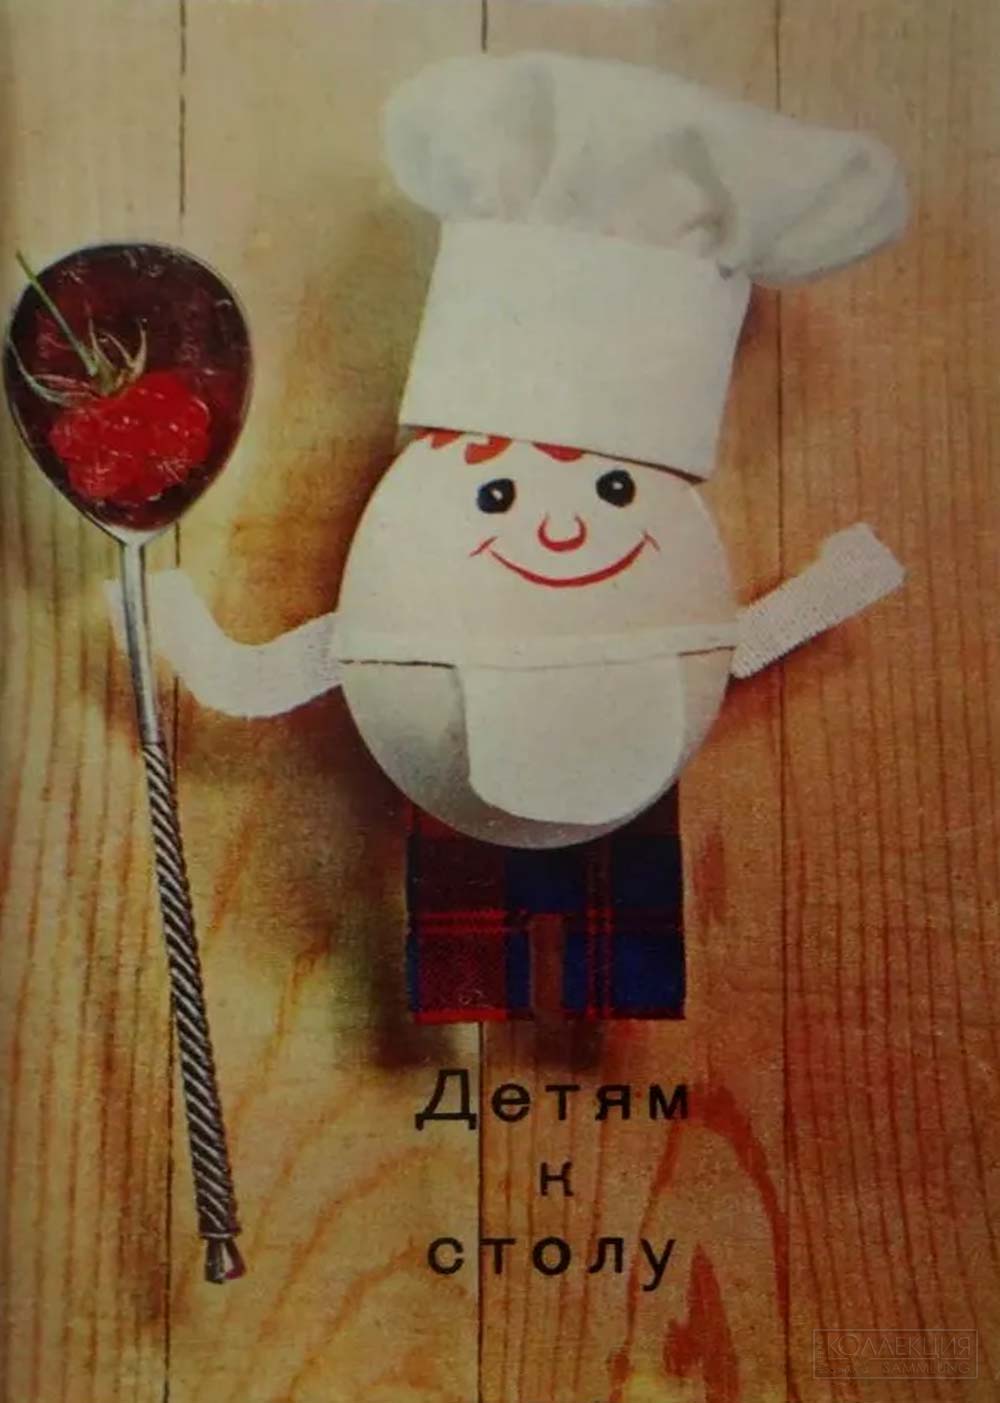 О. Чиликин. Комплект открыток "Детям к столу" 15 шт. Планета, 1972